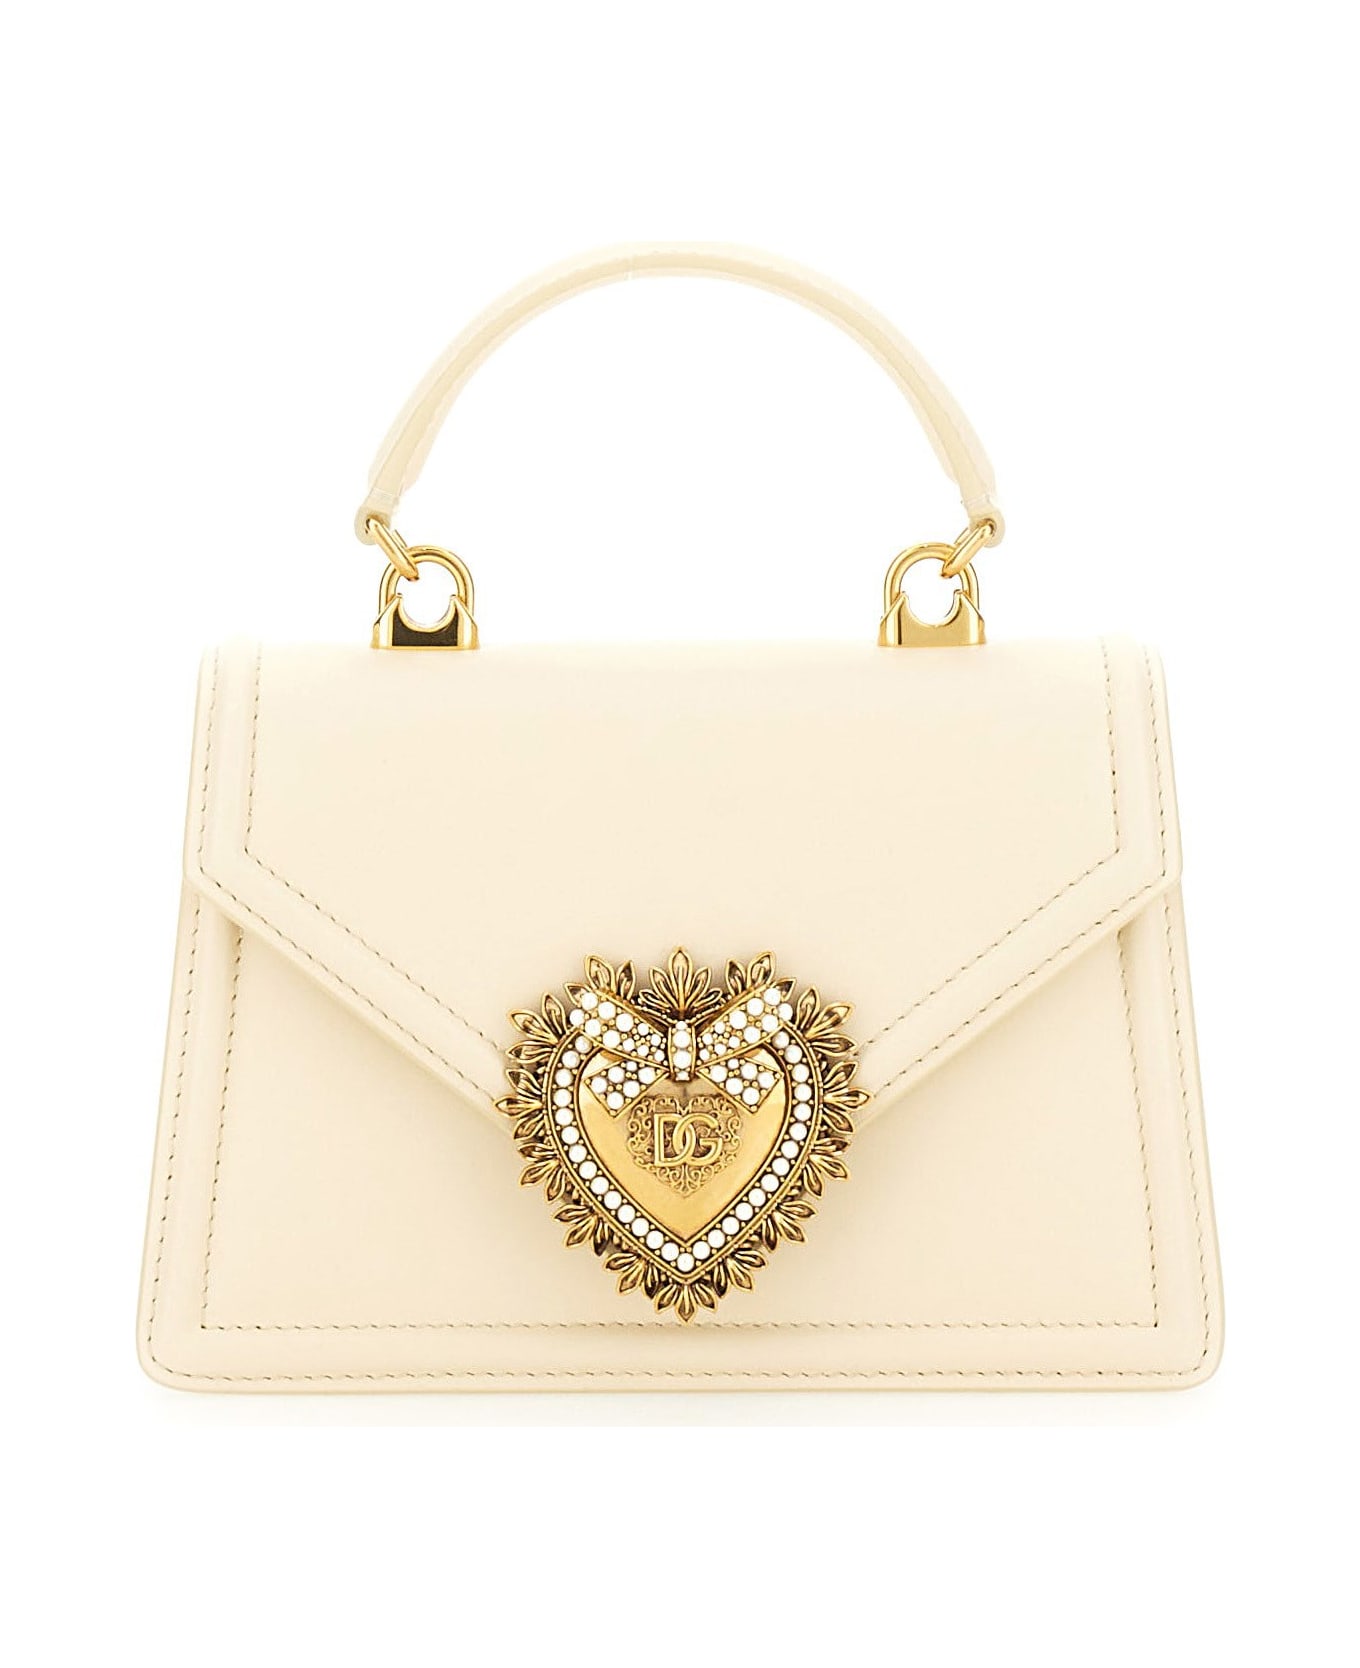 Dolce & Gabbana Devotion Handbag - Butter トートバッグ